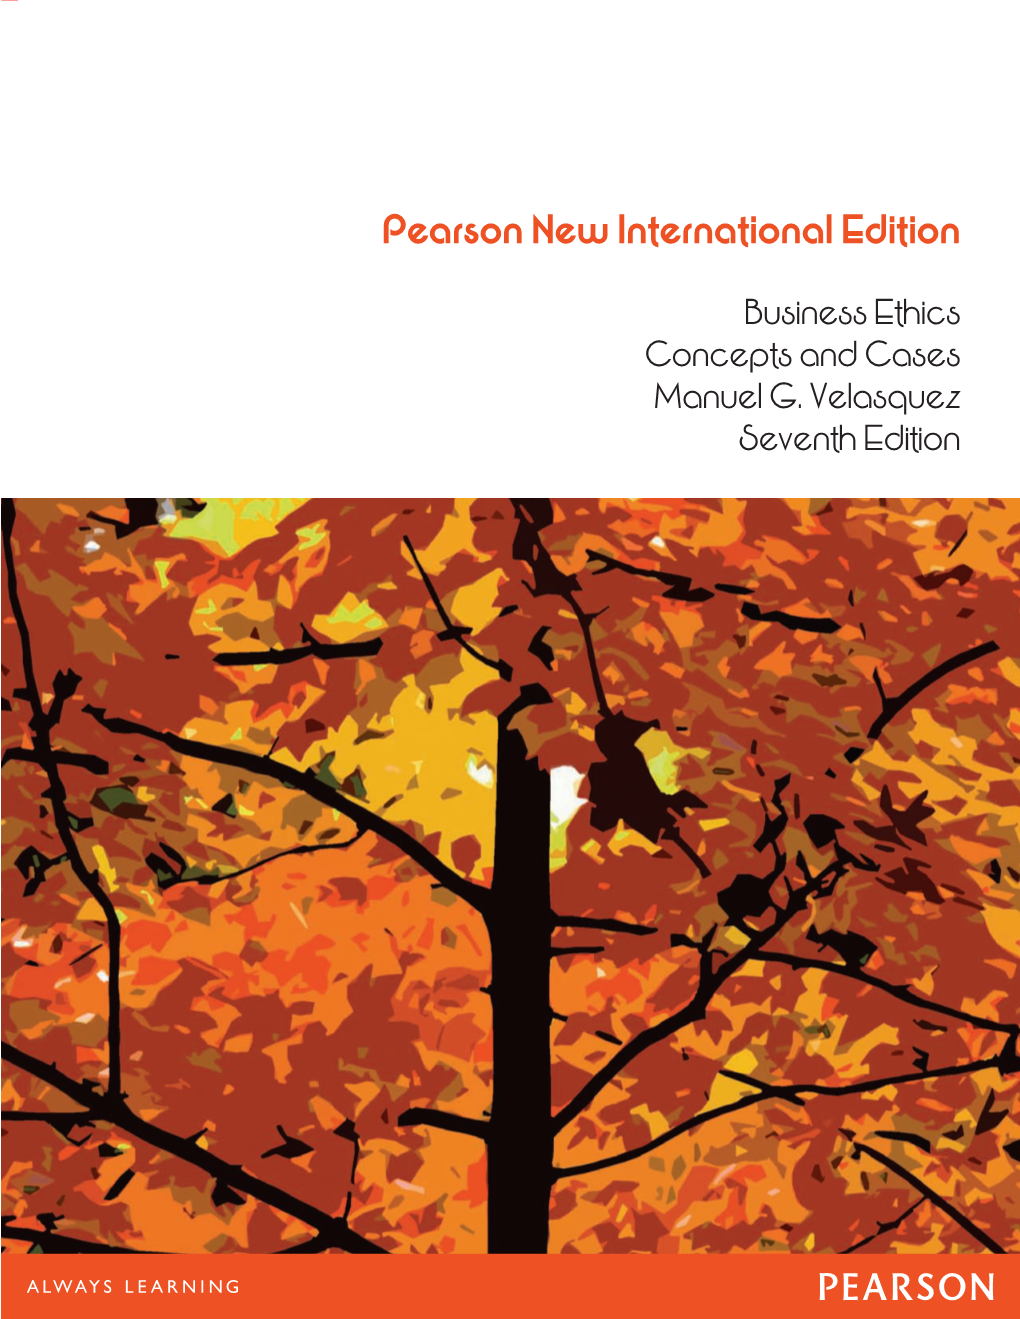 Business Ethics Concepts and Cases Manuel G. Velasquez Seventh Edition